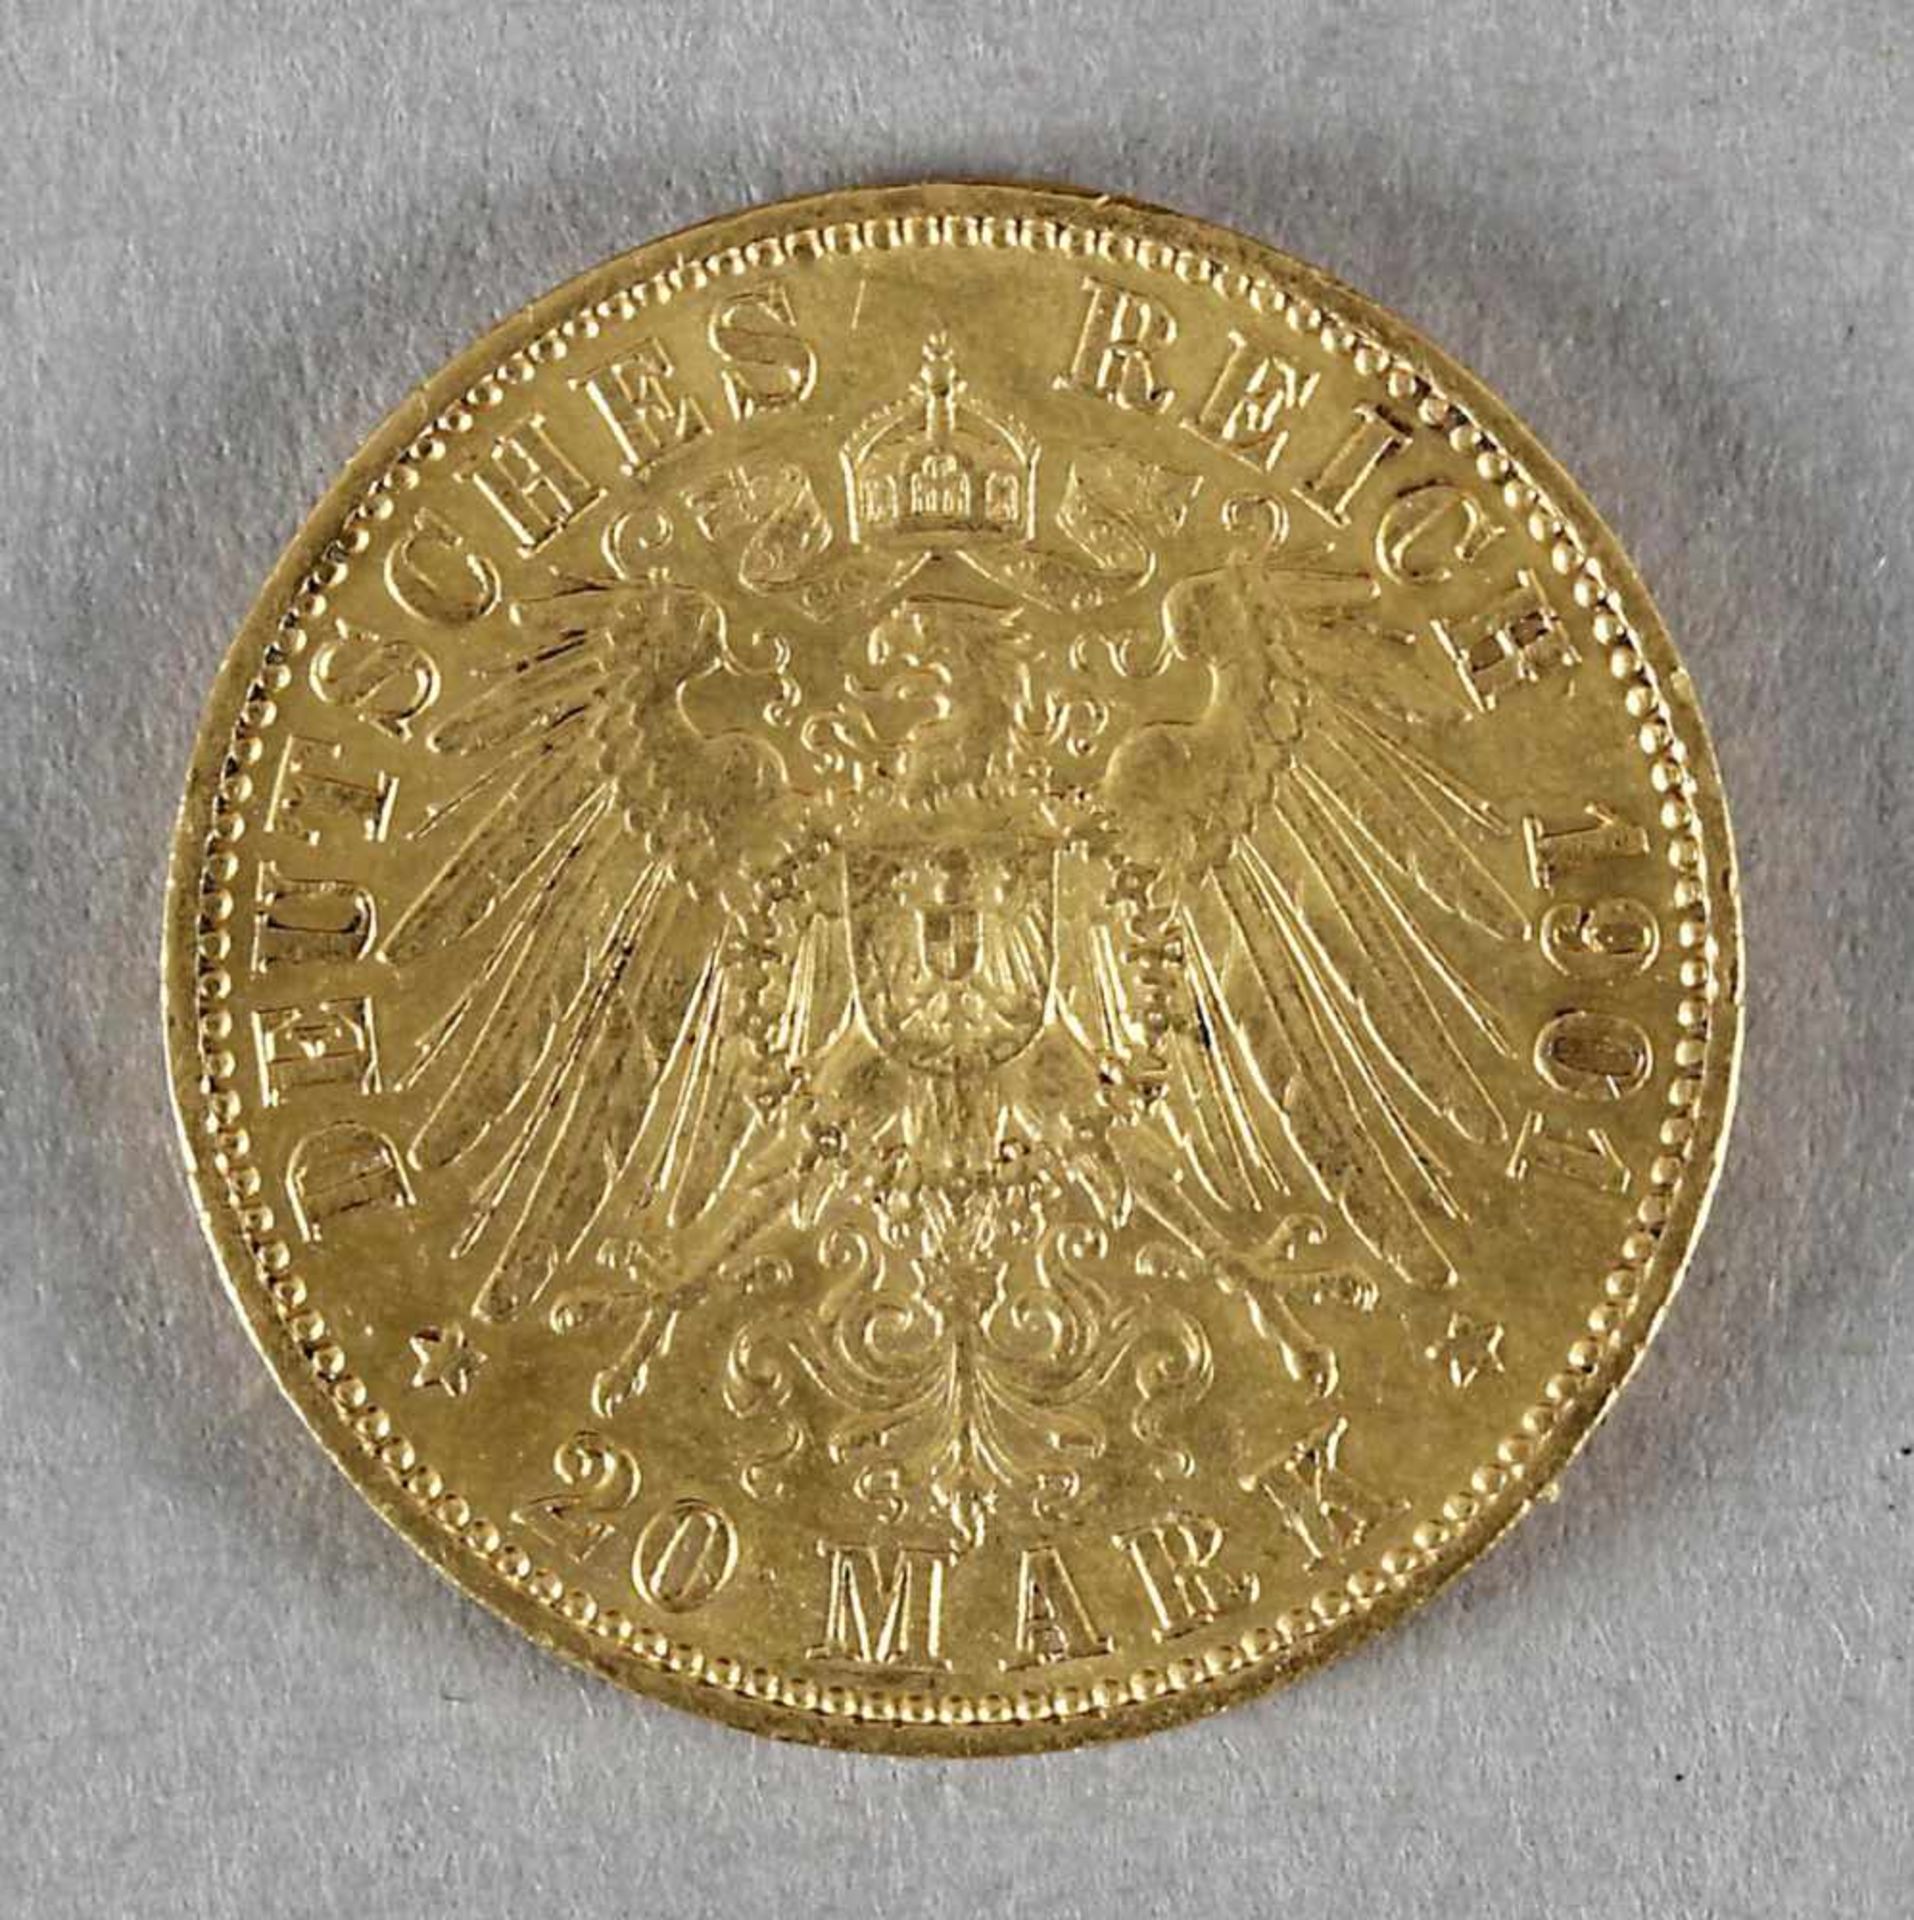 Goldmünze, 20 Mark, Wilhelm II. von Preußen, 1901 A - Image 2 of 2